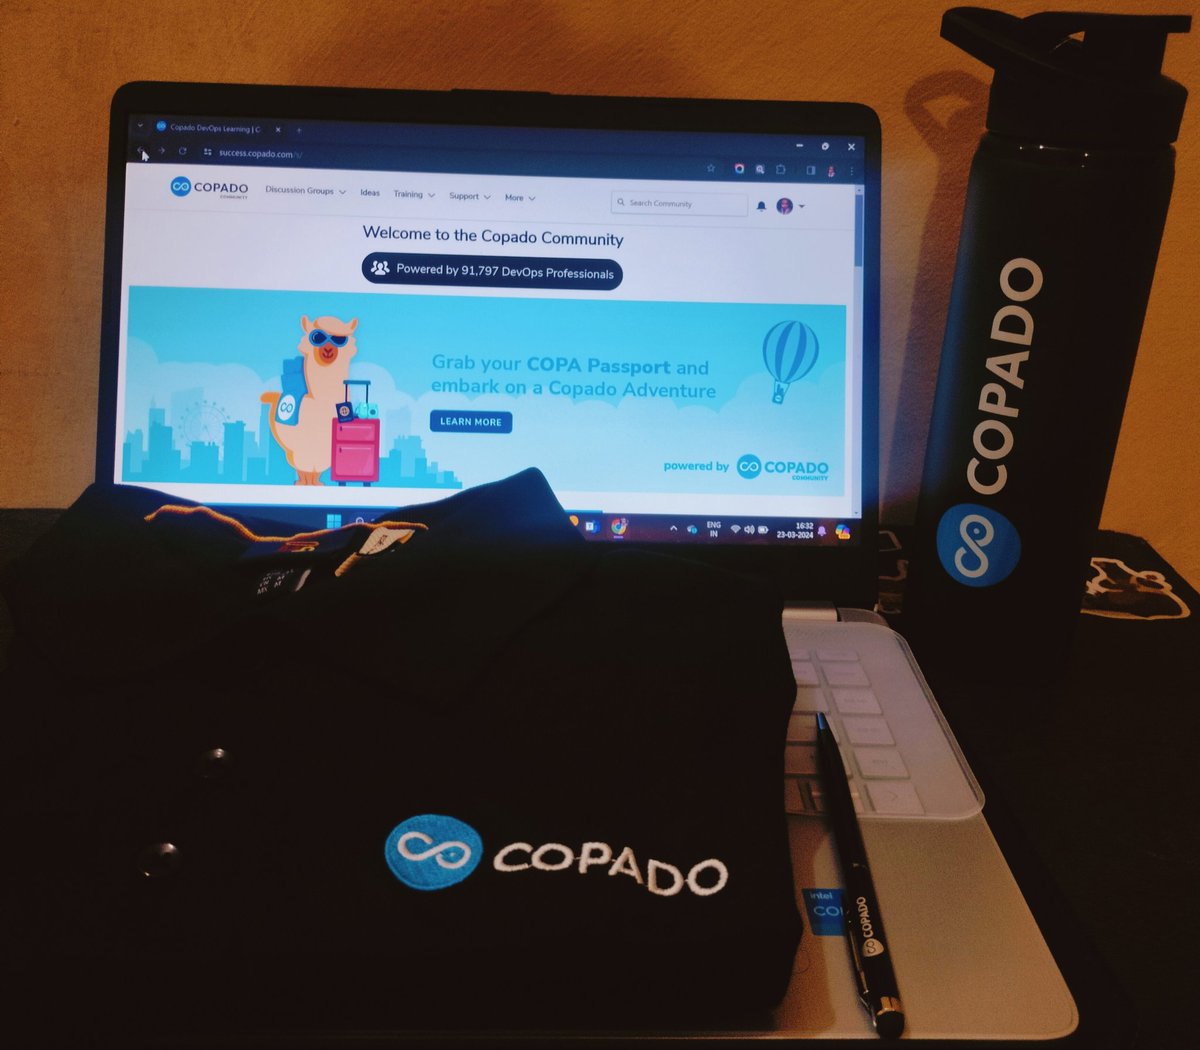 🎉 𝗙𝗶𝗻𝗮𝗹𝗹𝘆, @CopadoSolutions 𝗵𝗮𝘀 𝗮𝗱𝗱𝗲𝗱 𝗰𝗼𝗹𝗼𝗿 𝘁𝗼 𝗺𝘆 𝗛𝗼𝗹𝗶 𝗳𝗲𝘀𝘁𝗶𝘃𝗮𝗹 𝘄𝗶𝘁𝗵 𝗮 𝗠𝗲𝗻𝘁𝗼𝗿𝘀𝗵𝗶𝗽 𝗰𝘂𝗺 𝗔𝗽𝗽𝗿𝗲𝗰𝗶𝗮𝘁𝗶𝗼𝗻 𝗴𝗶𝗳𝘁! 🌈 #copadocommunity #copado #mentorship